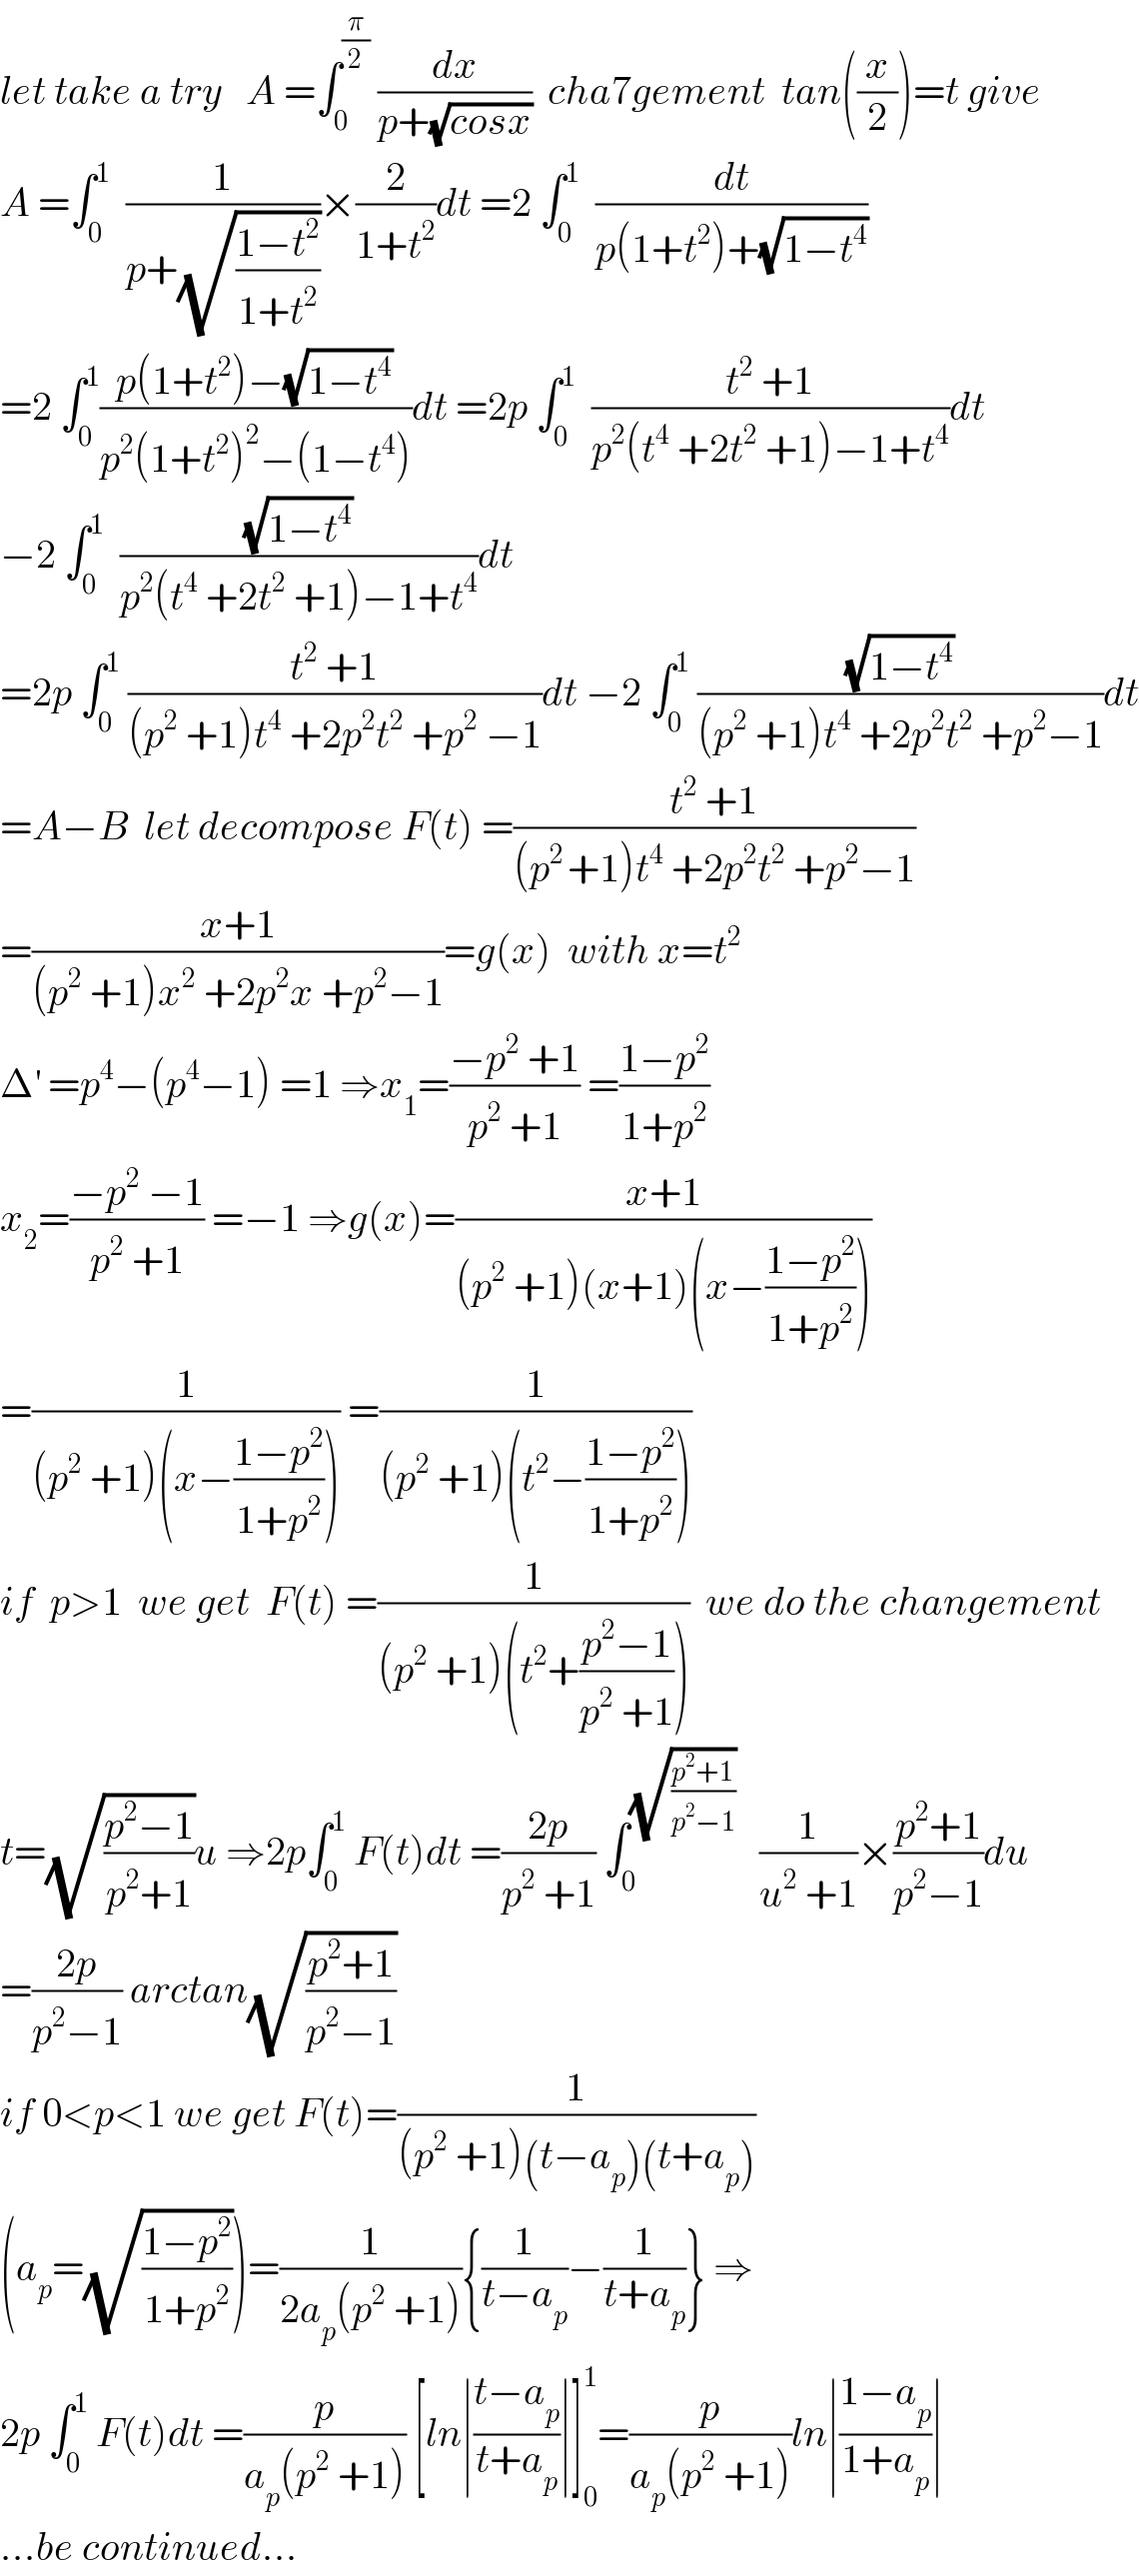 let take a try   A =∫_0 ^(π/2)  (dx/(p+(√(cosx))))  cha7gement  tan((x/2))=t give  A =∫_0 ^1   (1/(p+(√((1−t^2 )/(1+t^2 )))))×(2/(1+t^2 ))dt =2 ∫_0 ^1   (dt/(p(1+t^2 )+(√(1−t^4 ))))  =2 ∫_0 ^1 ((p(1+t^2 )−(√(1−t^4 )))/(p^2 (1+t^2 )^2 −(1−t^4 )))dt =2p ∫_0 ^1   ((t^2  +1)/(p^2 (t^4  +2t^2  +1)−1+t^4 ))dt  −2 ∫_0 ^1   ((√(1−t^4 ))/(p^2 (t^4  +2t^2  +1)−1+t^4 ))dt  =2p ∫_0 ^1  ((t^2  +1)/((p^2  +1)t^4  +2p^2 t^2  +p^2  −1))dt −2 ∫_0 ^1  ((√(1−t^4 ))/((p^2  +1)t^4  +2p^2 t^2  +p^2 −1))dt  =A−B  let decompose F(t) =((t^2  +1)/((p^(2 ) +1)t^4  +2p^2 t^2  +p^2 −1))  =((x+1)/((p^2  +1)x^2  +2p^2 x +p^2 −1))=g(x)  with x=t^2   Δ^′  =p^4 −(p^4 −1) =1 ⇒x_1 =((−p^2  +1)/(p^2  +1)) =((1−p^2 )/(1+p^2 ))  x_2 =((−p^2  −1)/(p^2  +1)) =−1 ⇒g(x)=((x+1)/((p^2  +1)(x+1)(x−((1−p^2 )/(1+p^2 )))))  =(1/((p^2  +1)(x−((1−p^2 )/(1+p^2 ))))) =(1/((p^2  +1)(t^2 −((1−p^2 )/(1+p^2 )))))  if  p>1  we get  F(t) =(1/((p^2  +1)(t^2 +((p^2 −1)/(p^2  +1)))))  we do the changement  t=(√((p^2 −1)/(p^2 +1)))u ⇒2p∫_0 ^1  F(t)dt =((2p)/(p^2  +1)) ∫_0 ^(√((p^2 +1)/(p^2 −1)))    (1/(u^2  +1))×((p^2 +1)/(p^2 −1))du  =((2p)/(p^2 −1)) arctan(√((p^2 +1)/(p^2 −1)))  if 0<p<1 we get F(t)=(1/((p^2  +1)(t−a_p )(t+a_p )))  (a_p =(√((1−p^2 )/(1+p^2 ))))=(1/(2a_p (p^2  +1))){(1/(t−a_p ))−(1/(t+a_p ))} ⇒  2p ∫_0 ^1  F(t)dt =(p/(a_p (p^2  +1))) [ln∣((t−a_p )/(t+a_p ))∣]_0 ^1 =(p/(a_p (p^2  +1)))ln∣((1−a_p )/(1+a_p ))∣  ...be continued...  